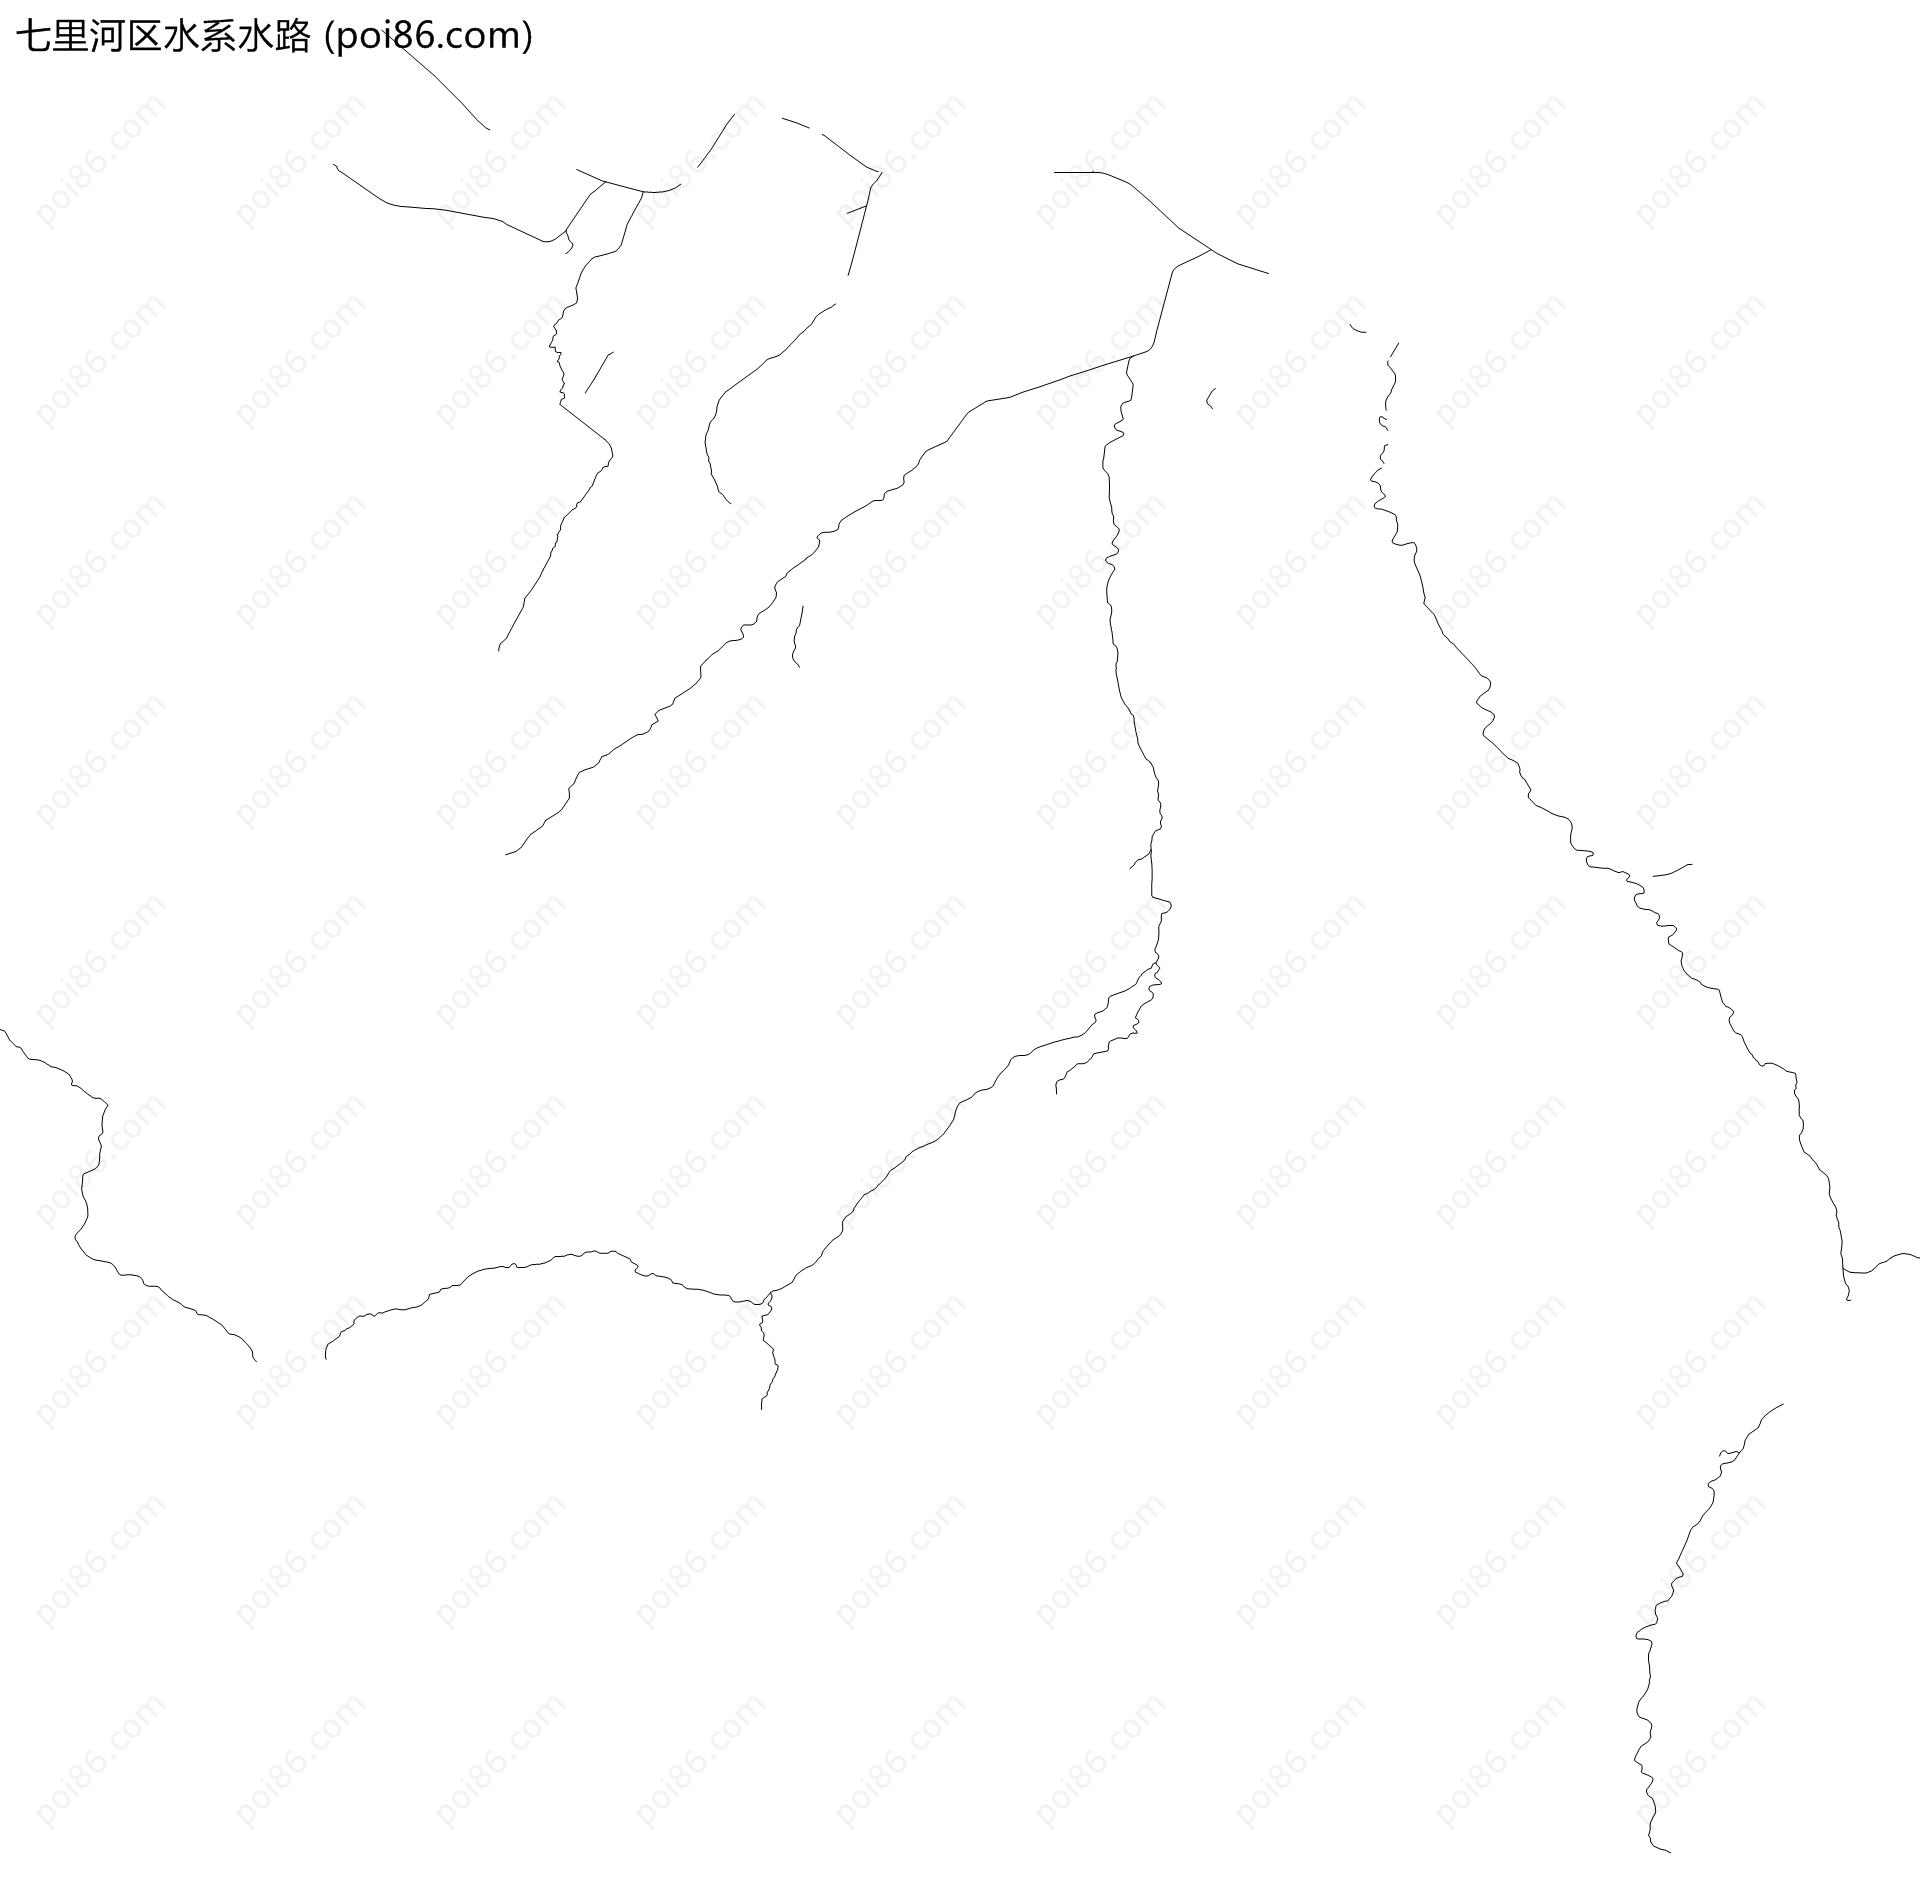 七里河区水系水路地图